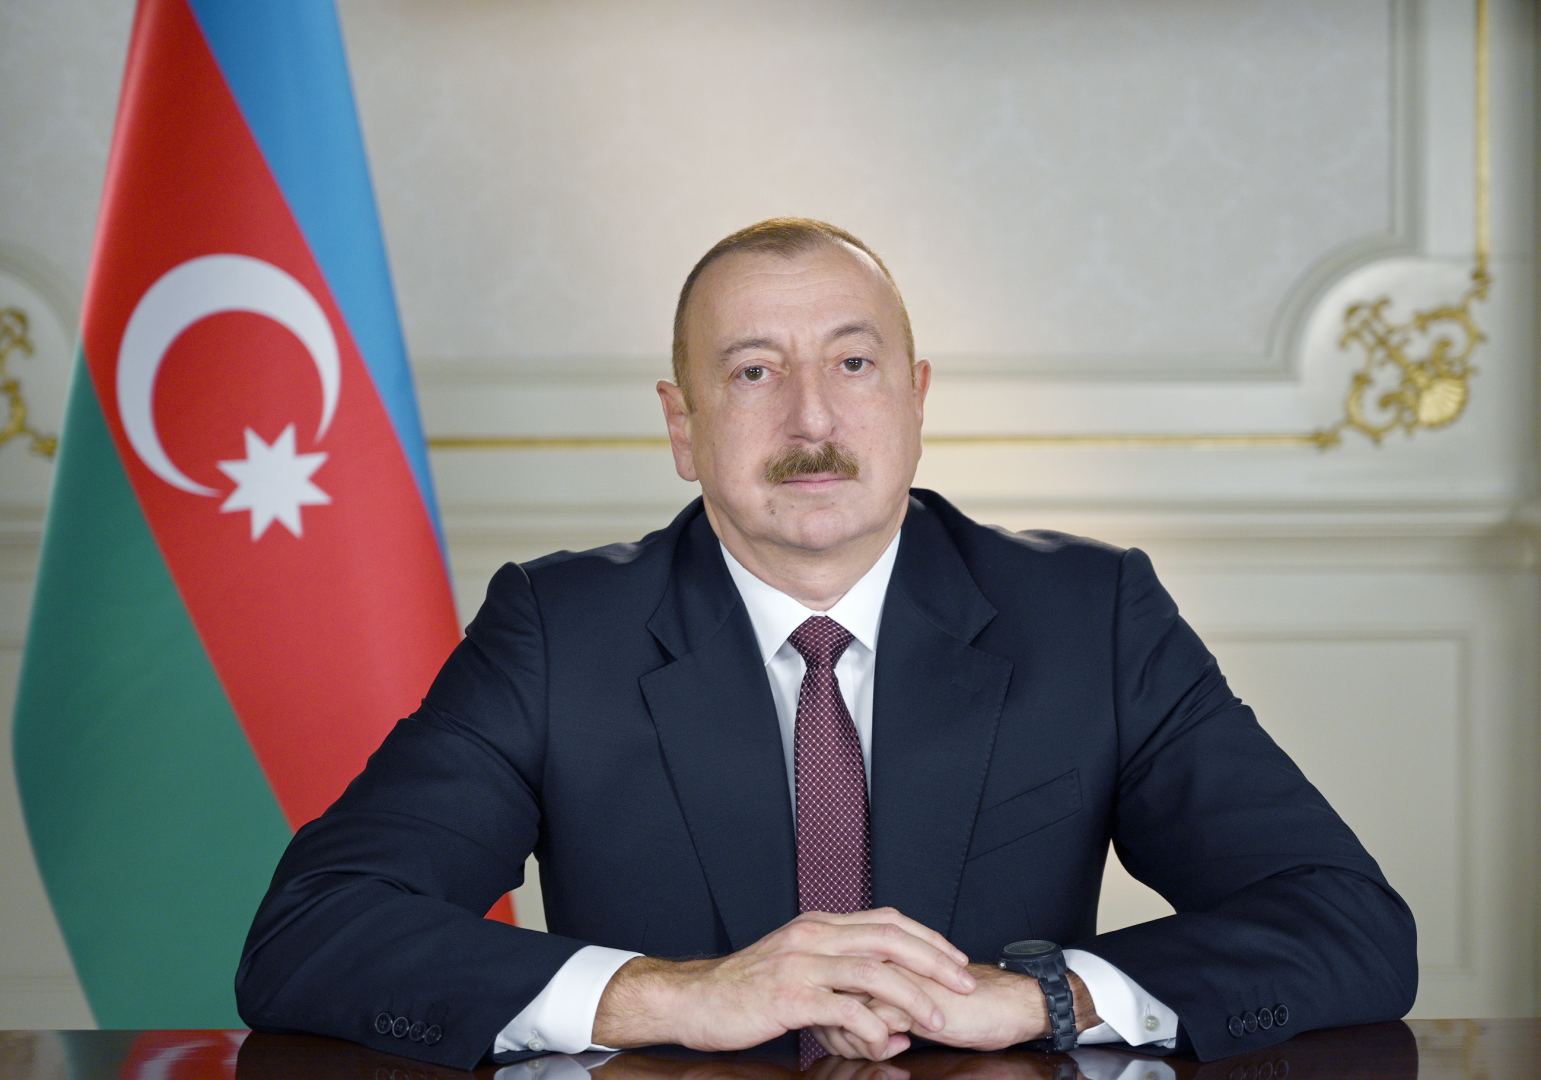 Prezident İlham Əliyev: Azərbaycan Silahlı Qüvvələri qədim Xudafərin körpüsünün üzərində Azərbaycan bayrağını qaldırdılar